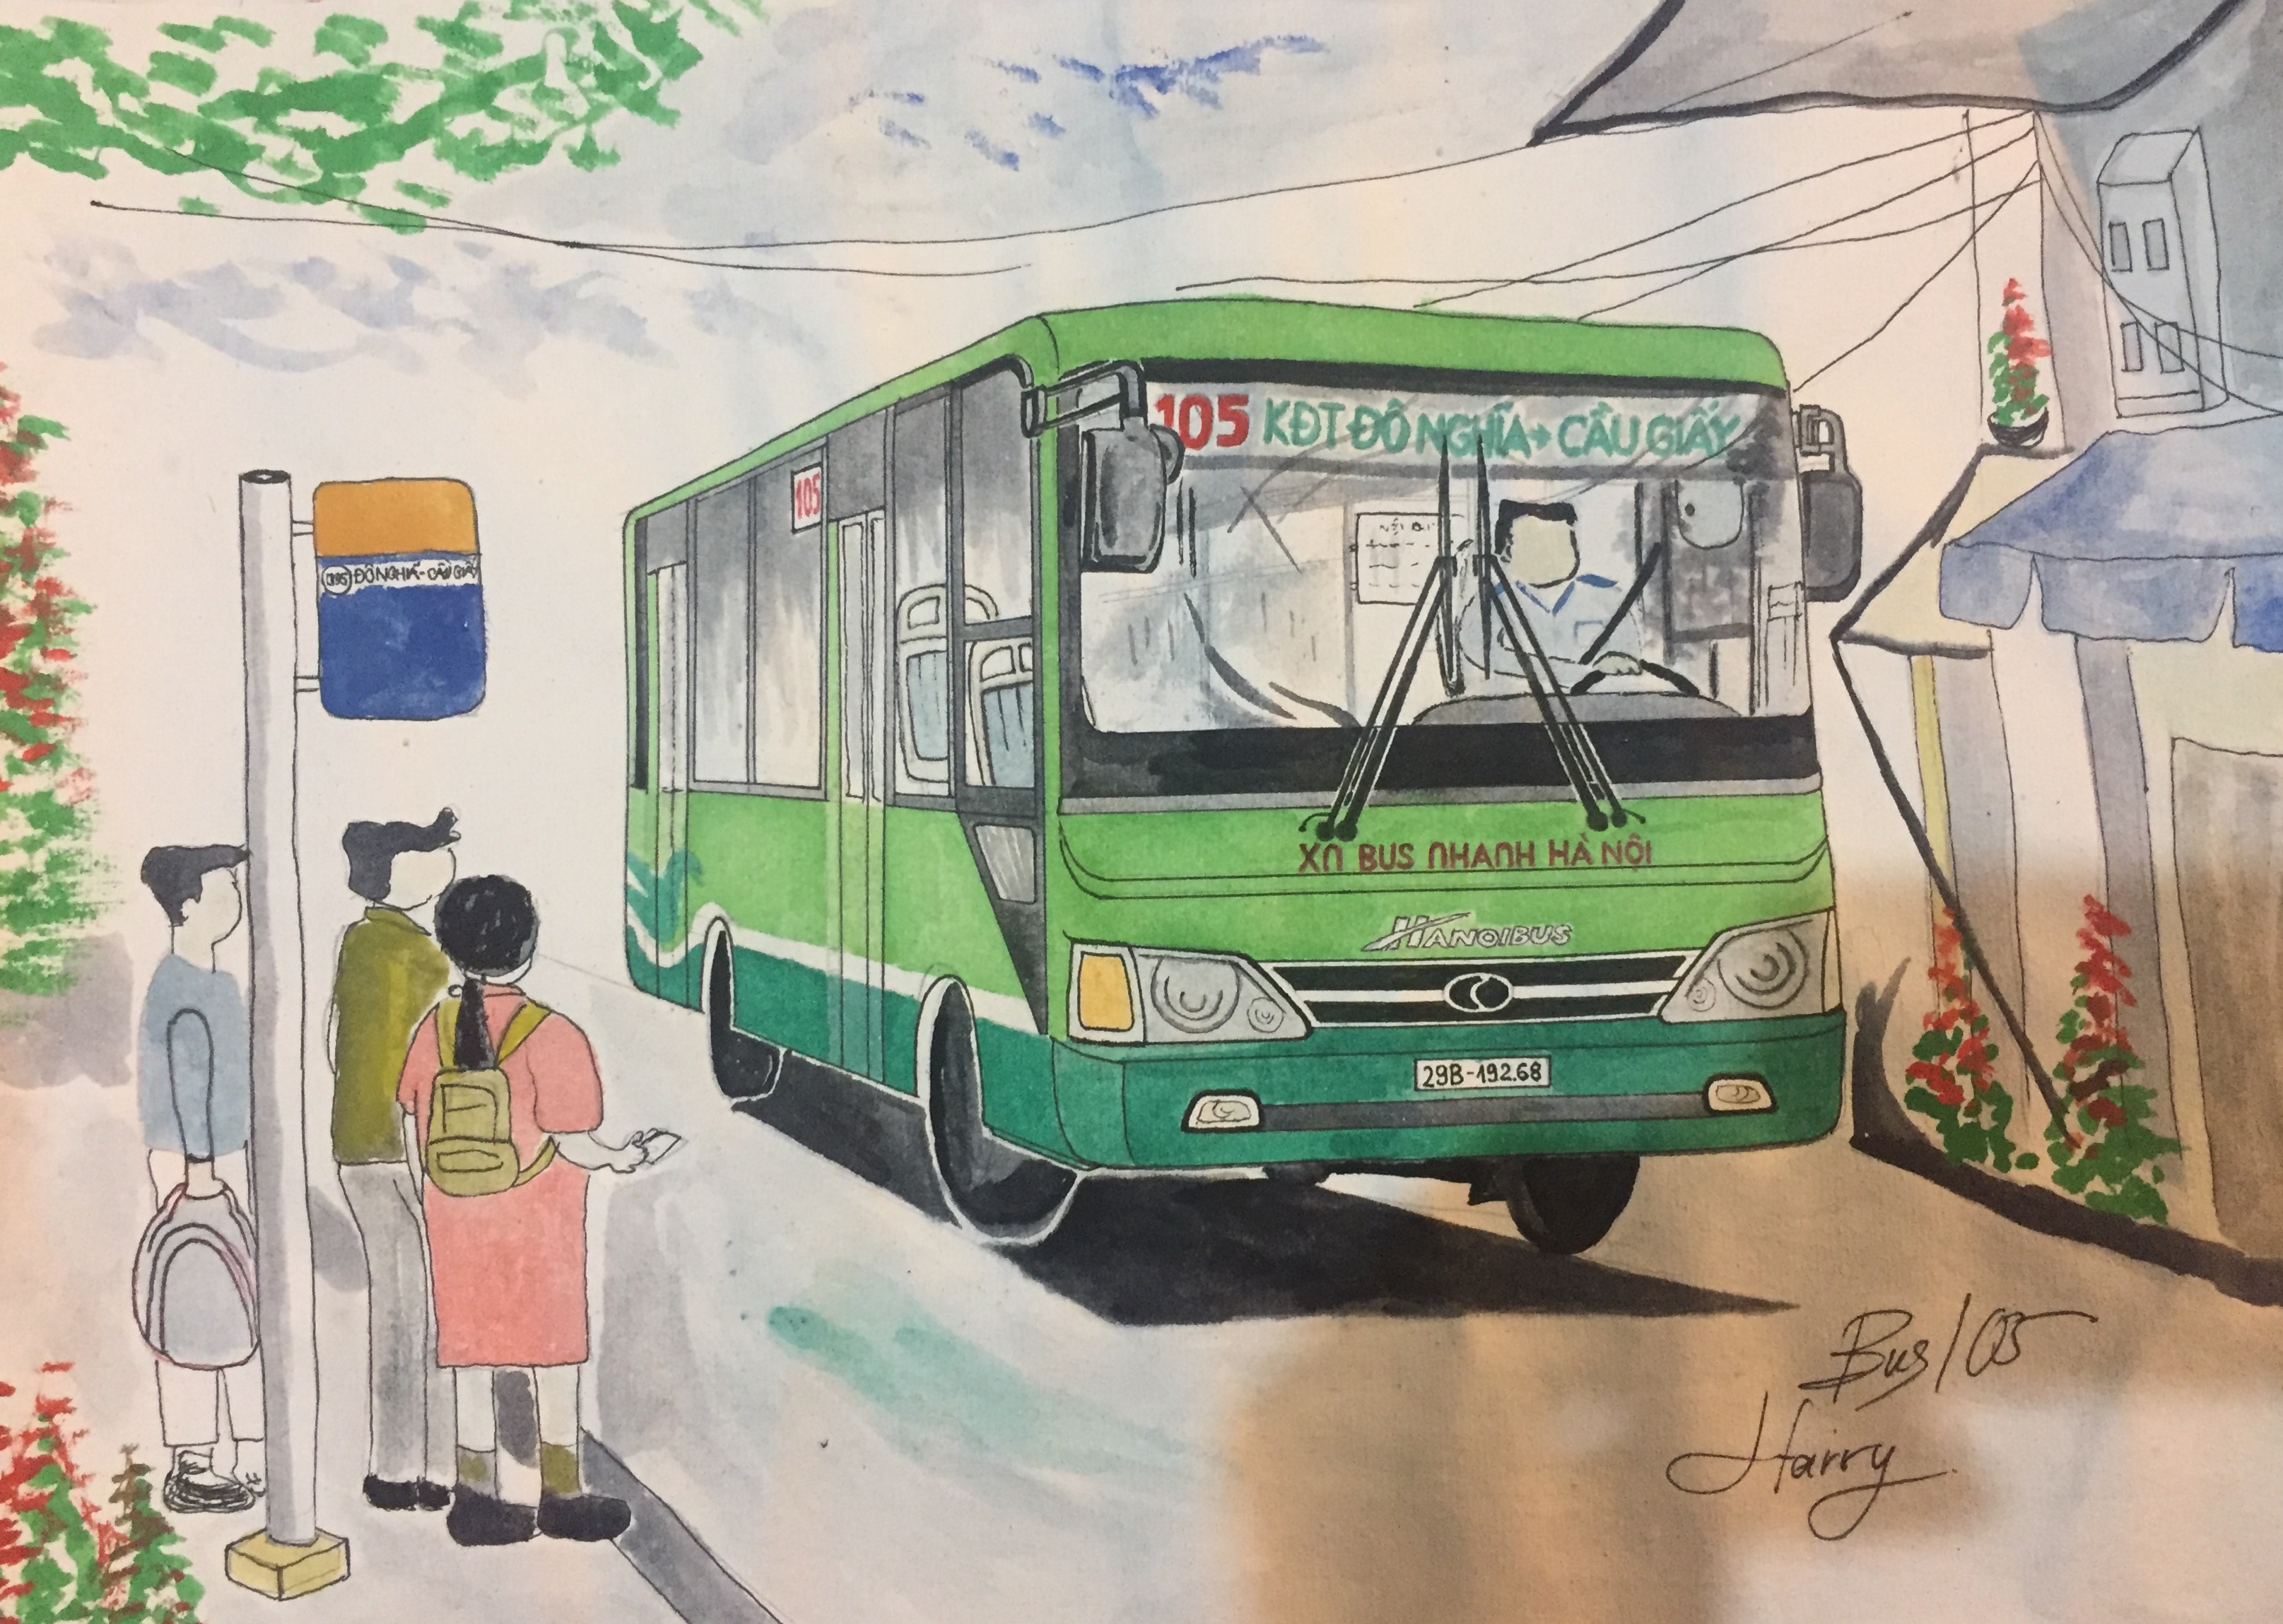 Bộ tranh vẽ xe buýt Hà Nội Bạn muốn khám phá những hình ảnh đặc trưng của Hà Nội? Hãy cùng chiêm ngưỡng bộ tranh vẽ tuyệt đẹp về các loại xe buýt thân quen phục vụ cho người dân thủ đô. Đây sẽ là một trải nghiệm đầy thú vị và giúp bạn hiểu thêm về thành phố của những ngàn năm văn hiến.